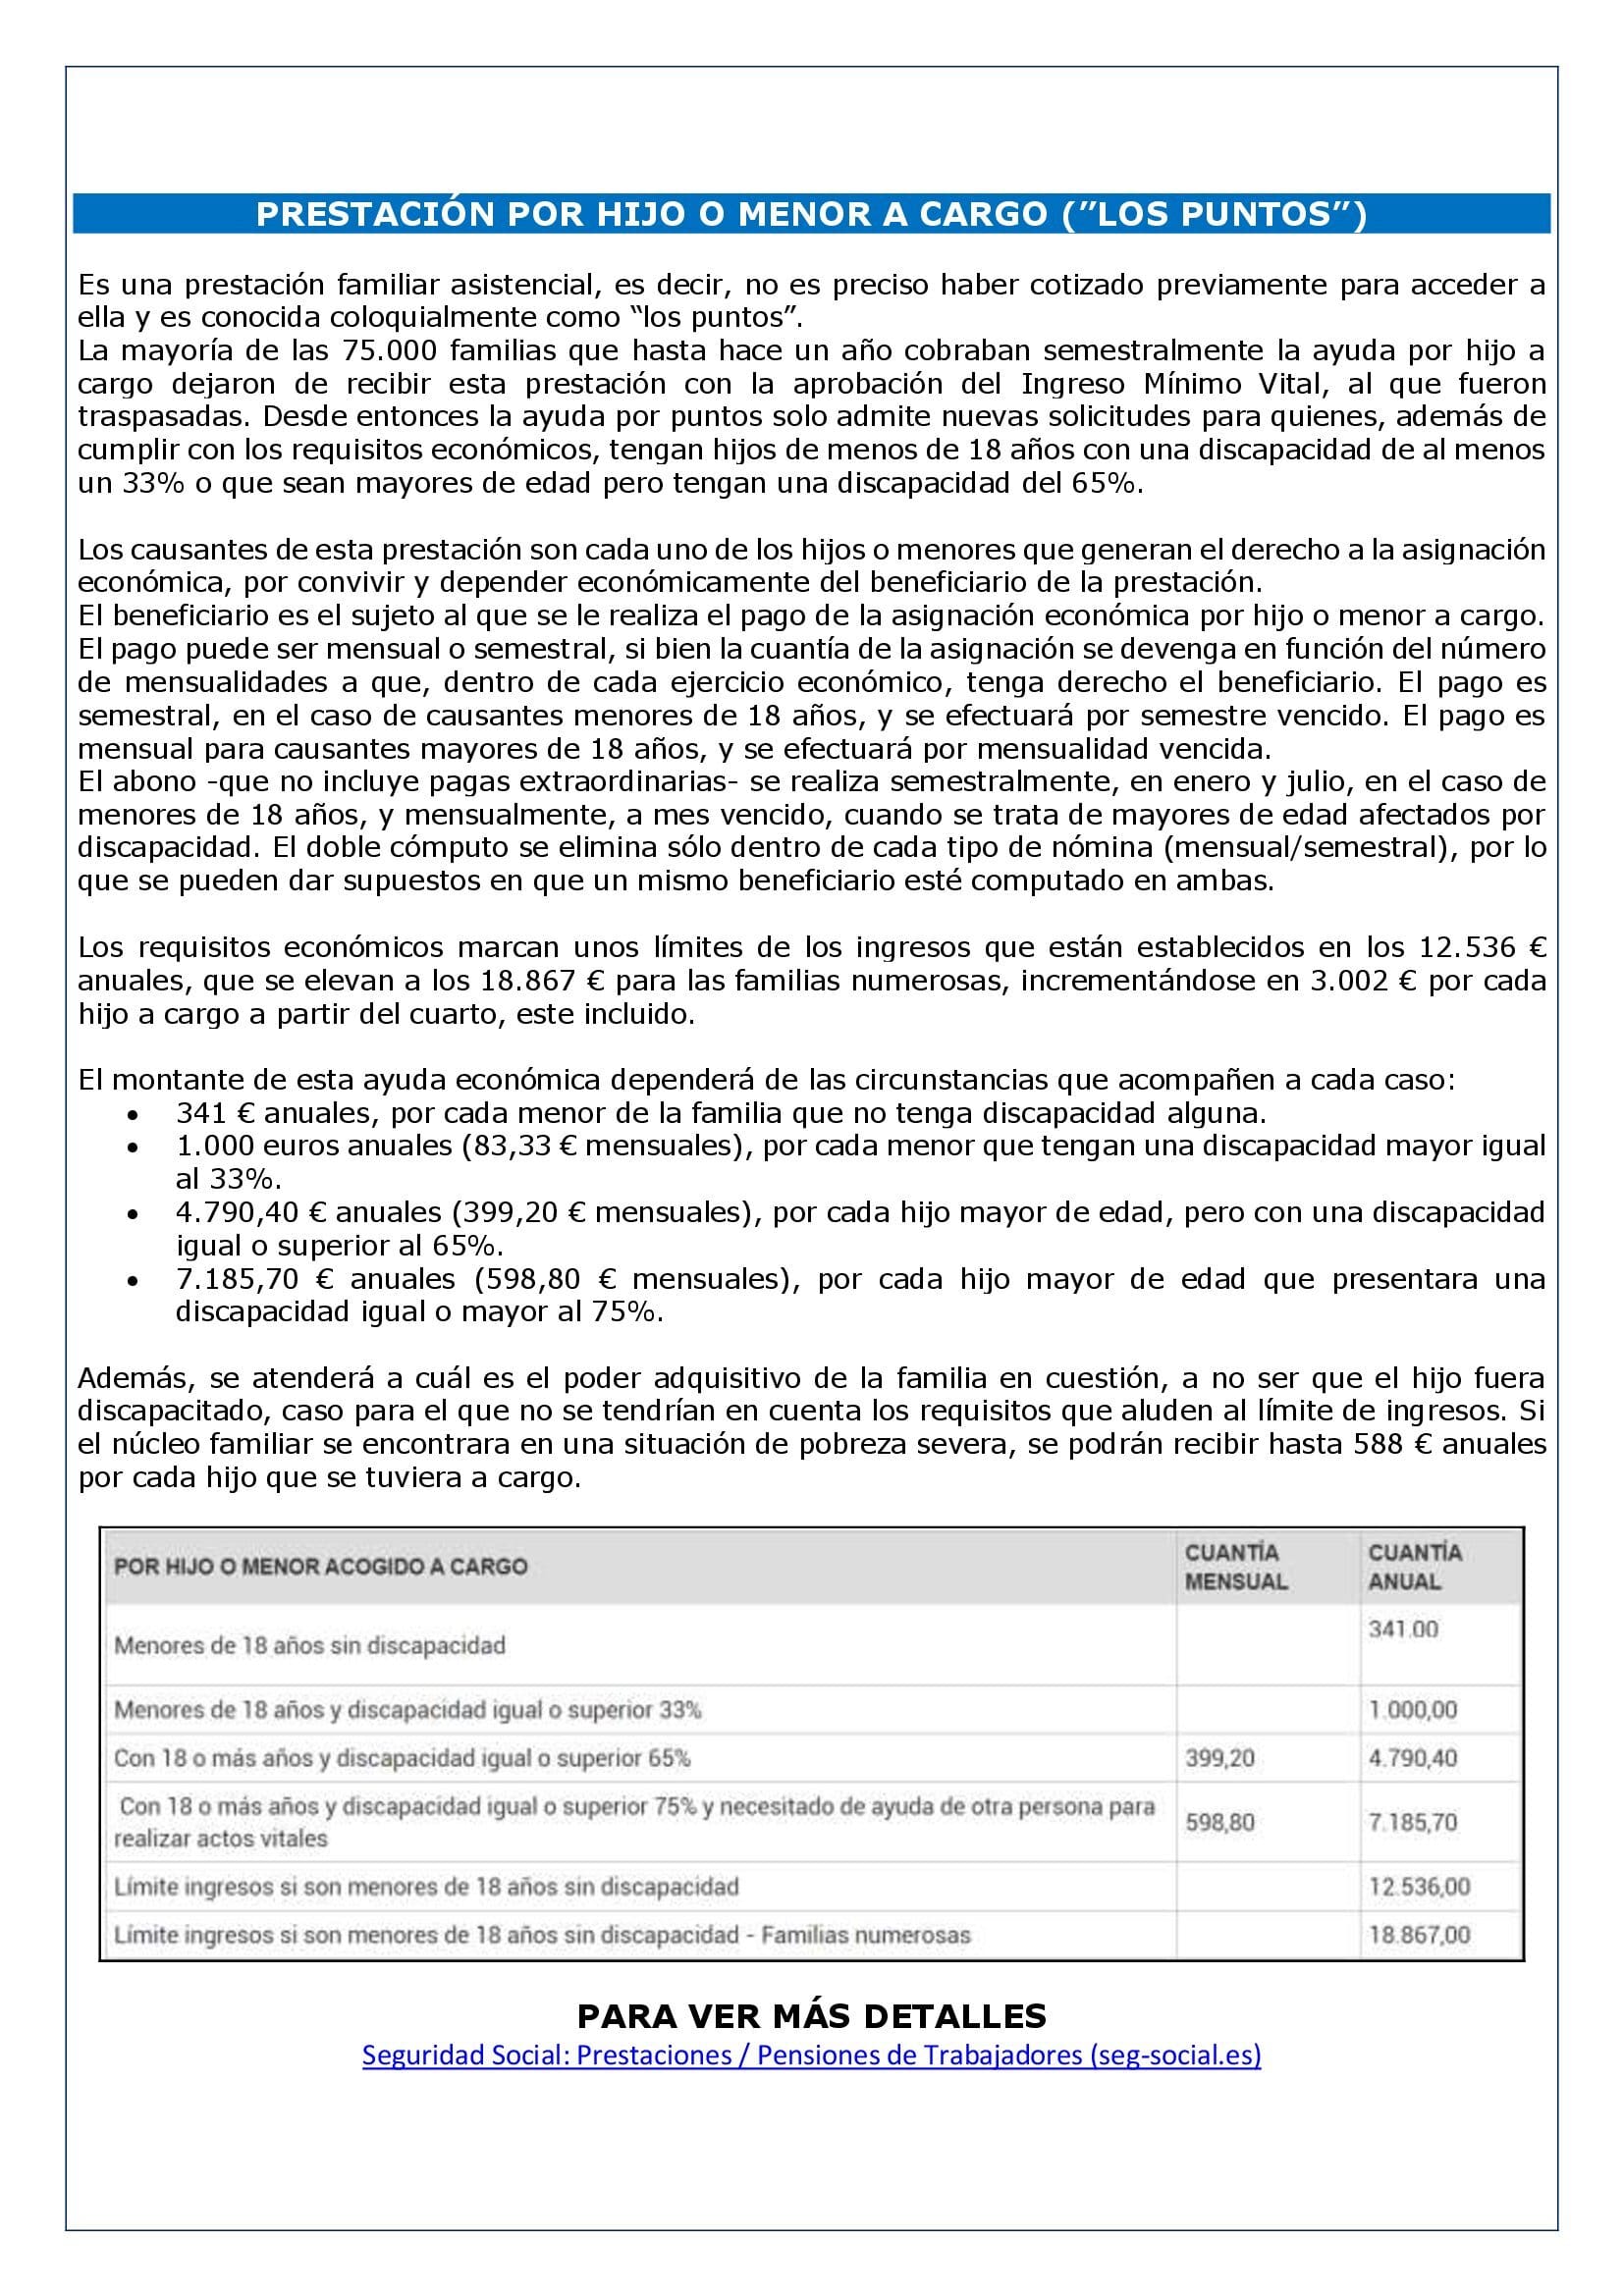 Certificado Ciencias Sociales desempleo PRESTACIÓN POR HIJO O MENOR A CARGO (”LOS PUNTOS”) - Laboral Pensiones